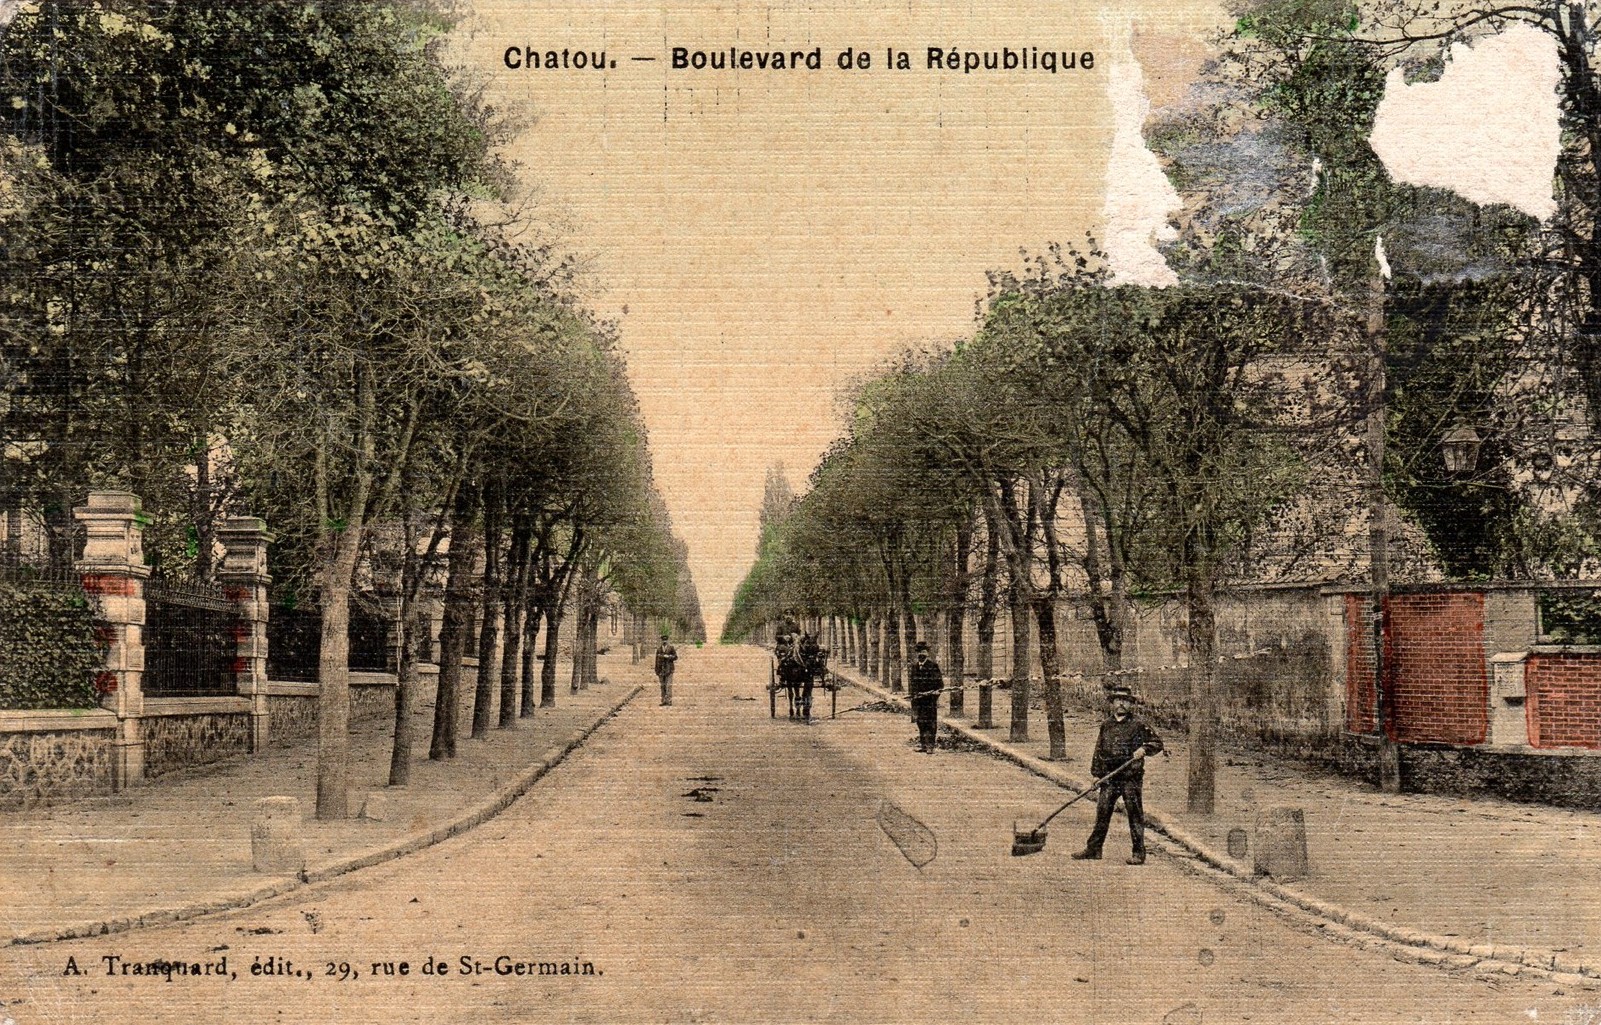 Chatou République 013 Boulevard de la République.jpg